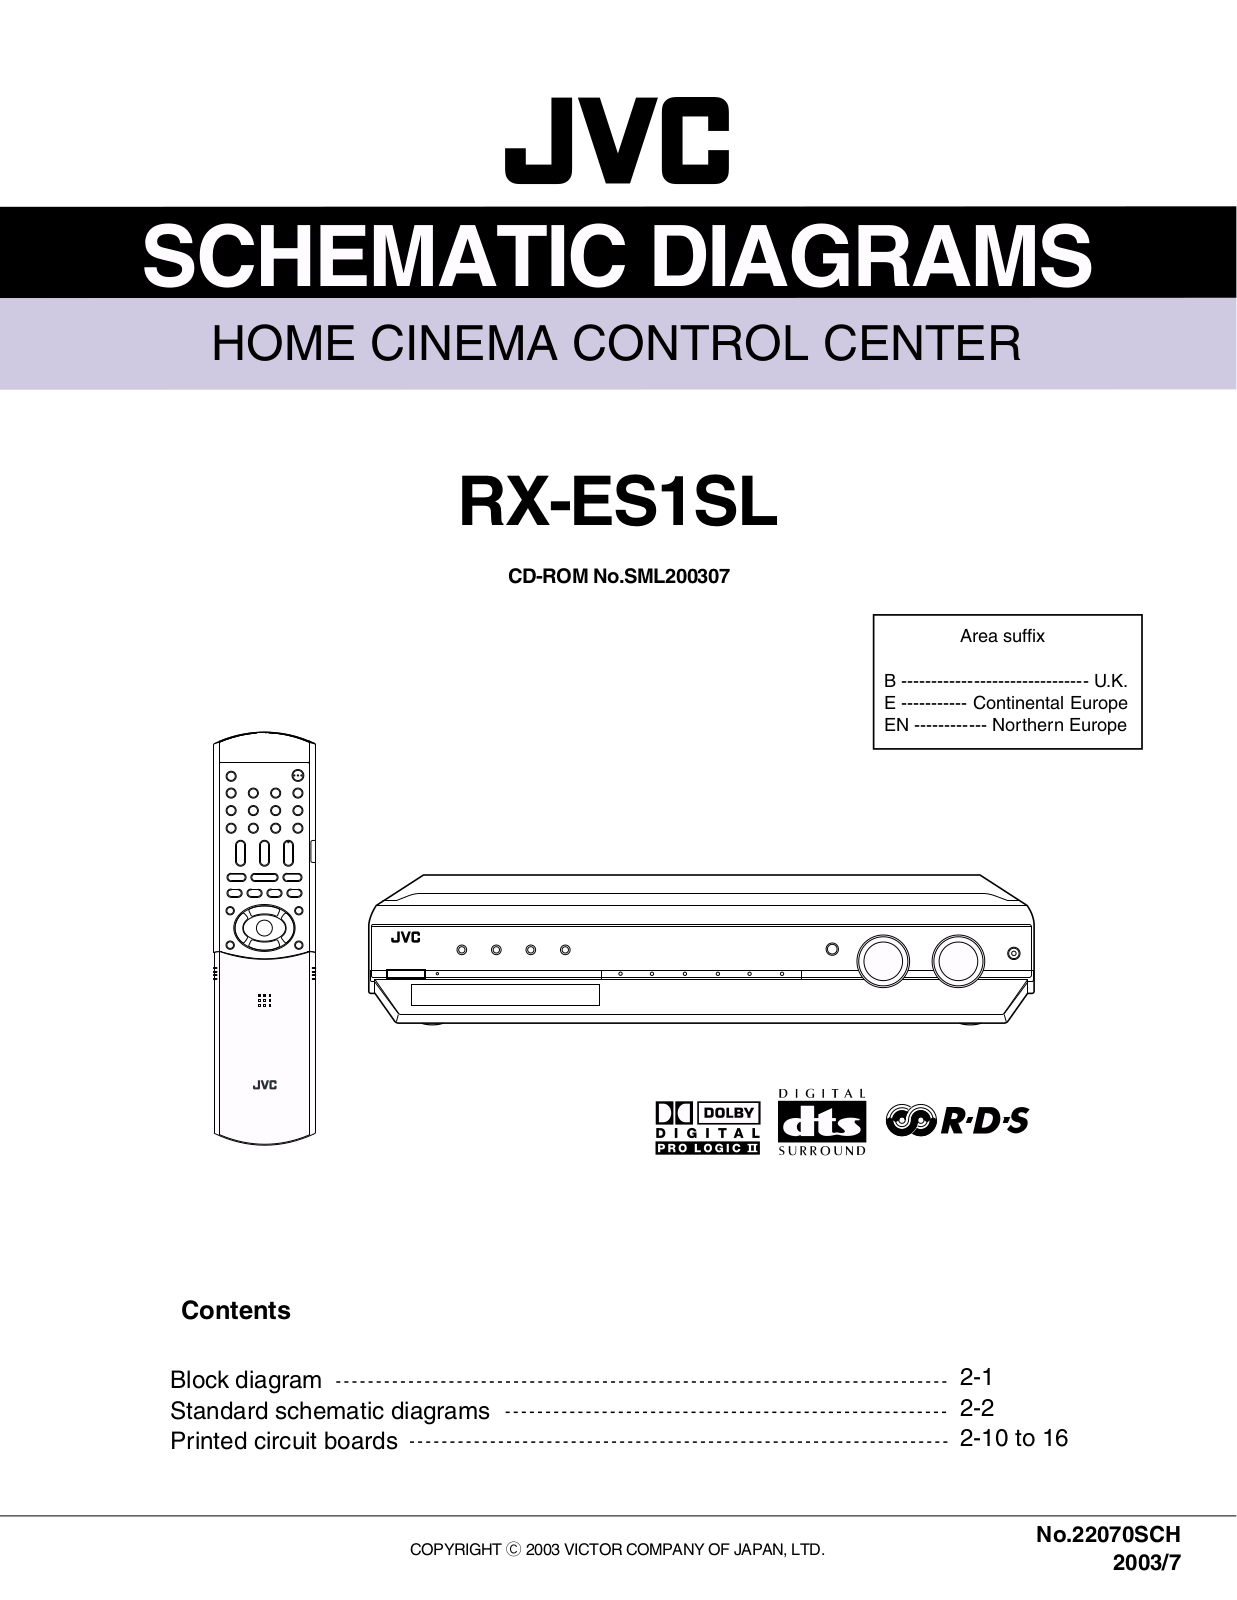 JVC RXES-1-SL Schematic